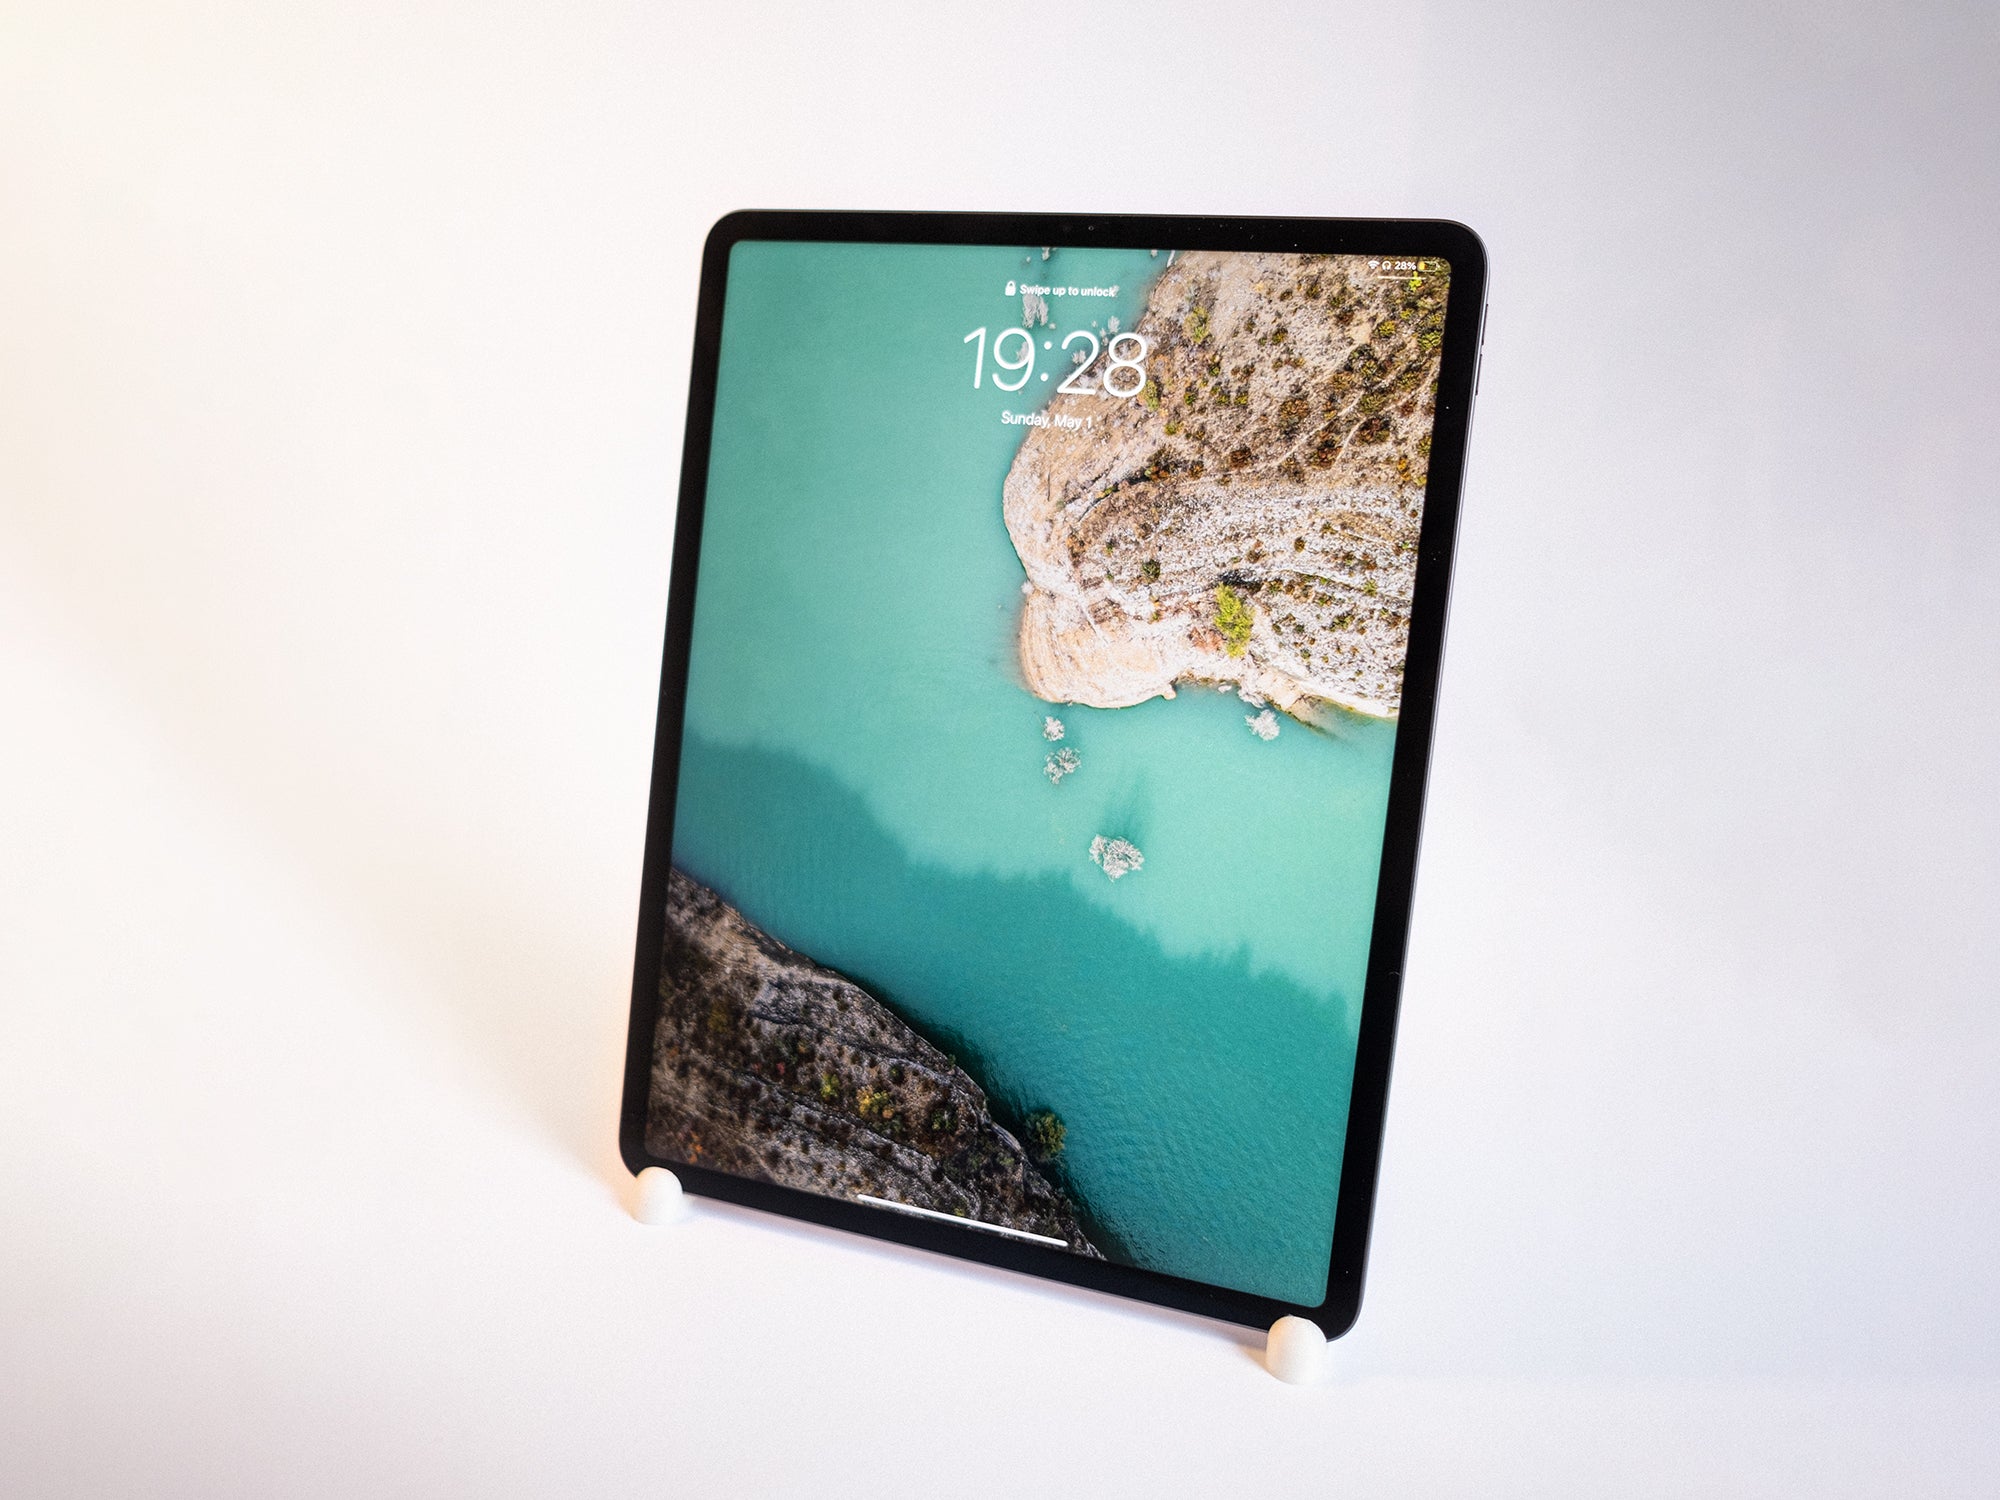 Podstawka pod iPada Pro 12,9' i iPada Air w orientacji poziomej